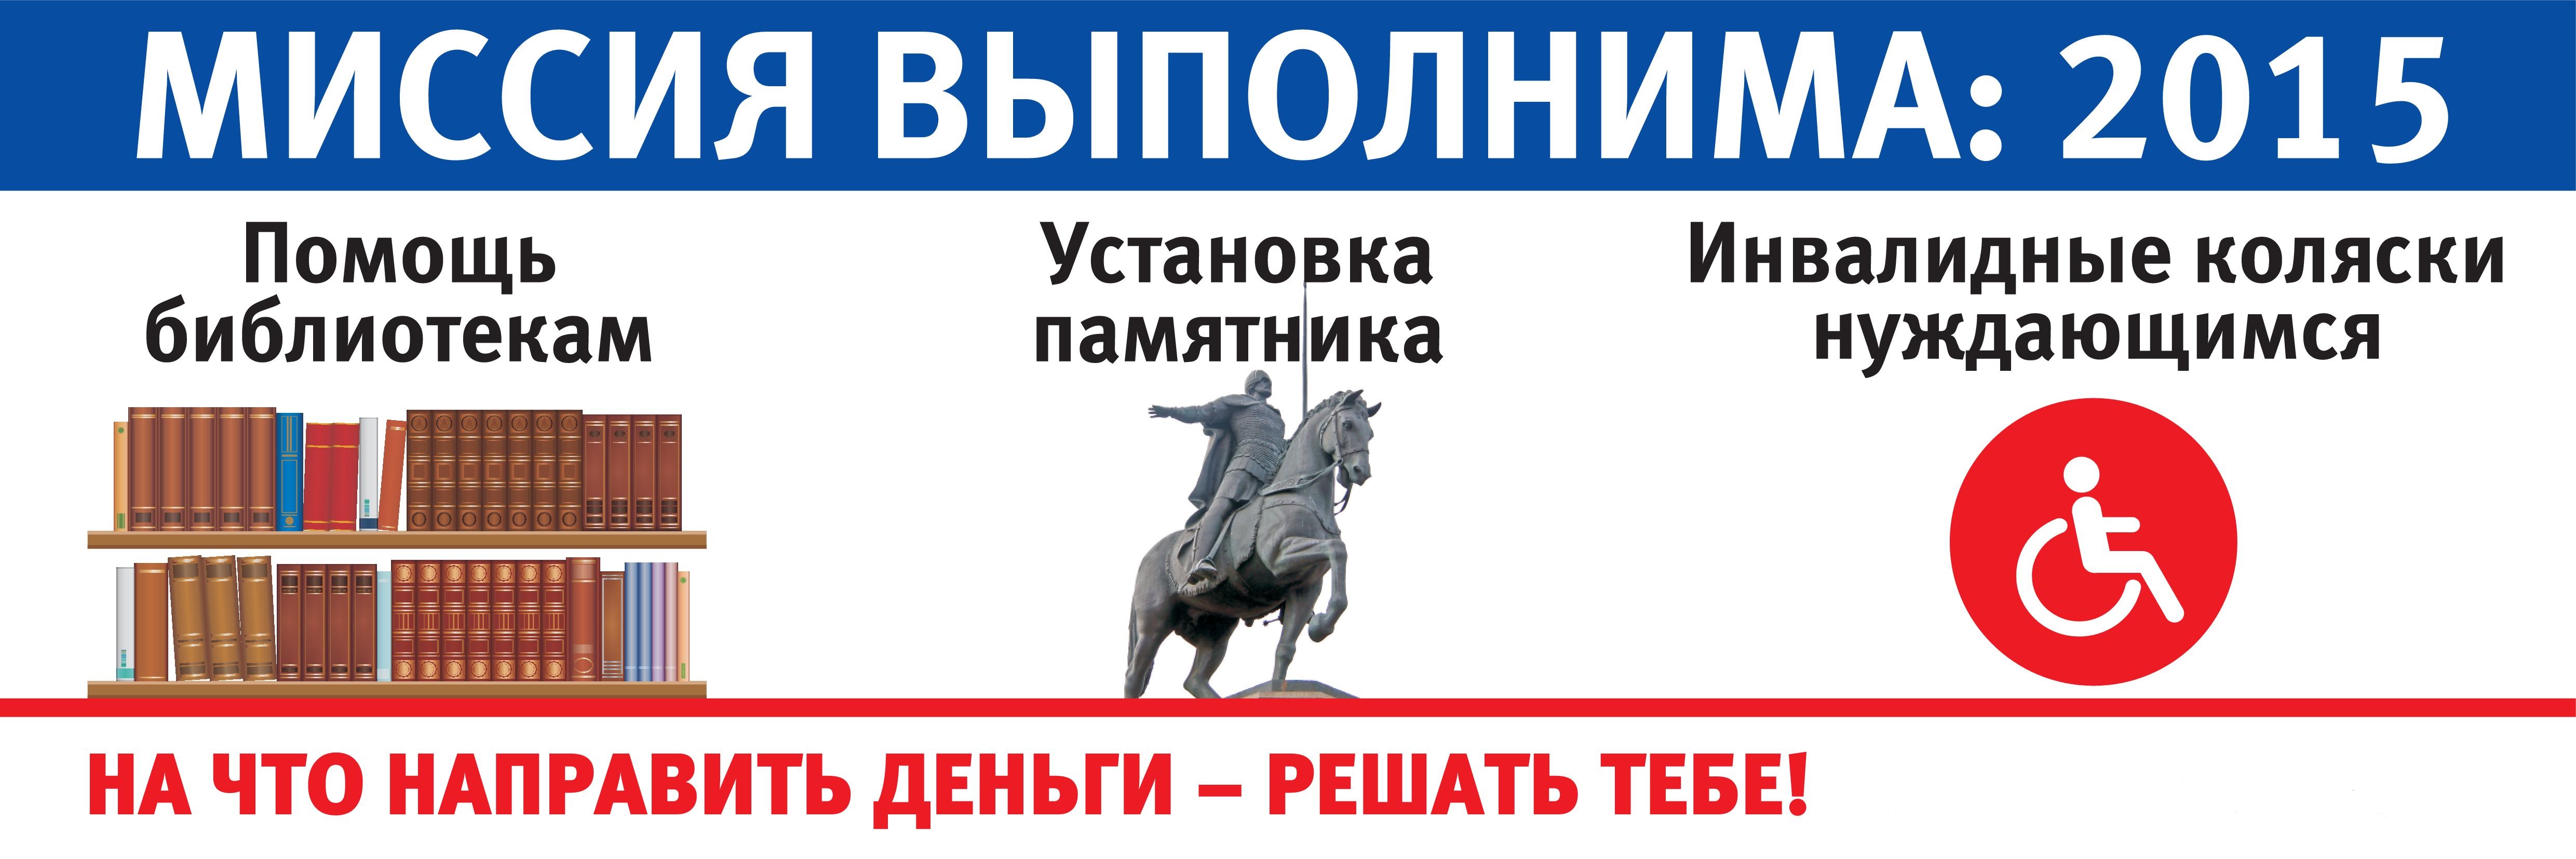 Миссия 2015 Нижегородского кредитного союза